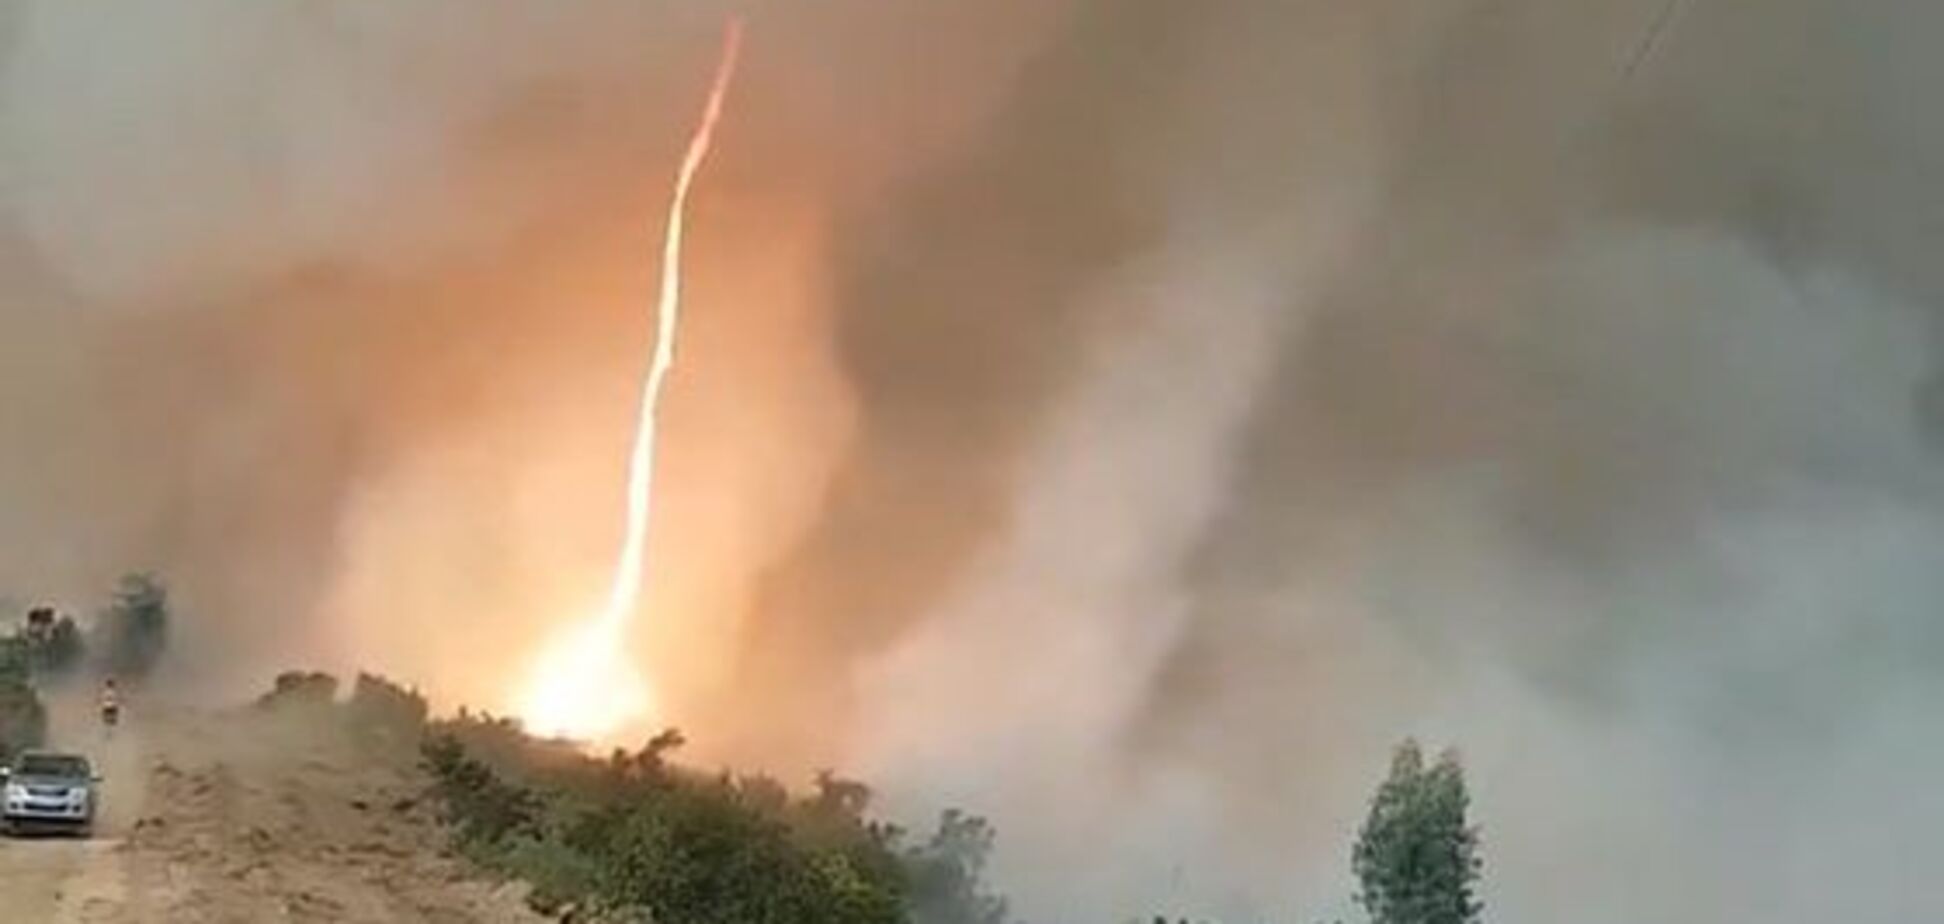 Вражаюче видовище: вогняне торнадо потрапило на відео у Португалії